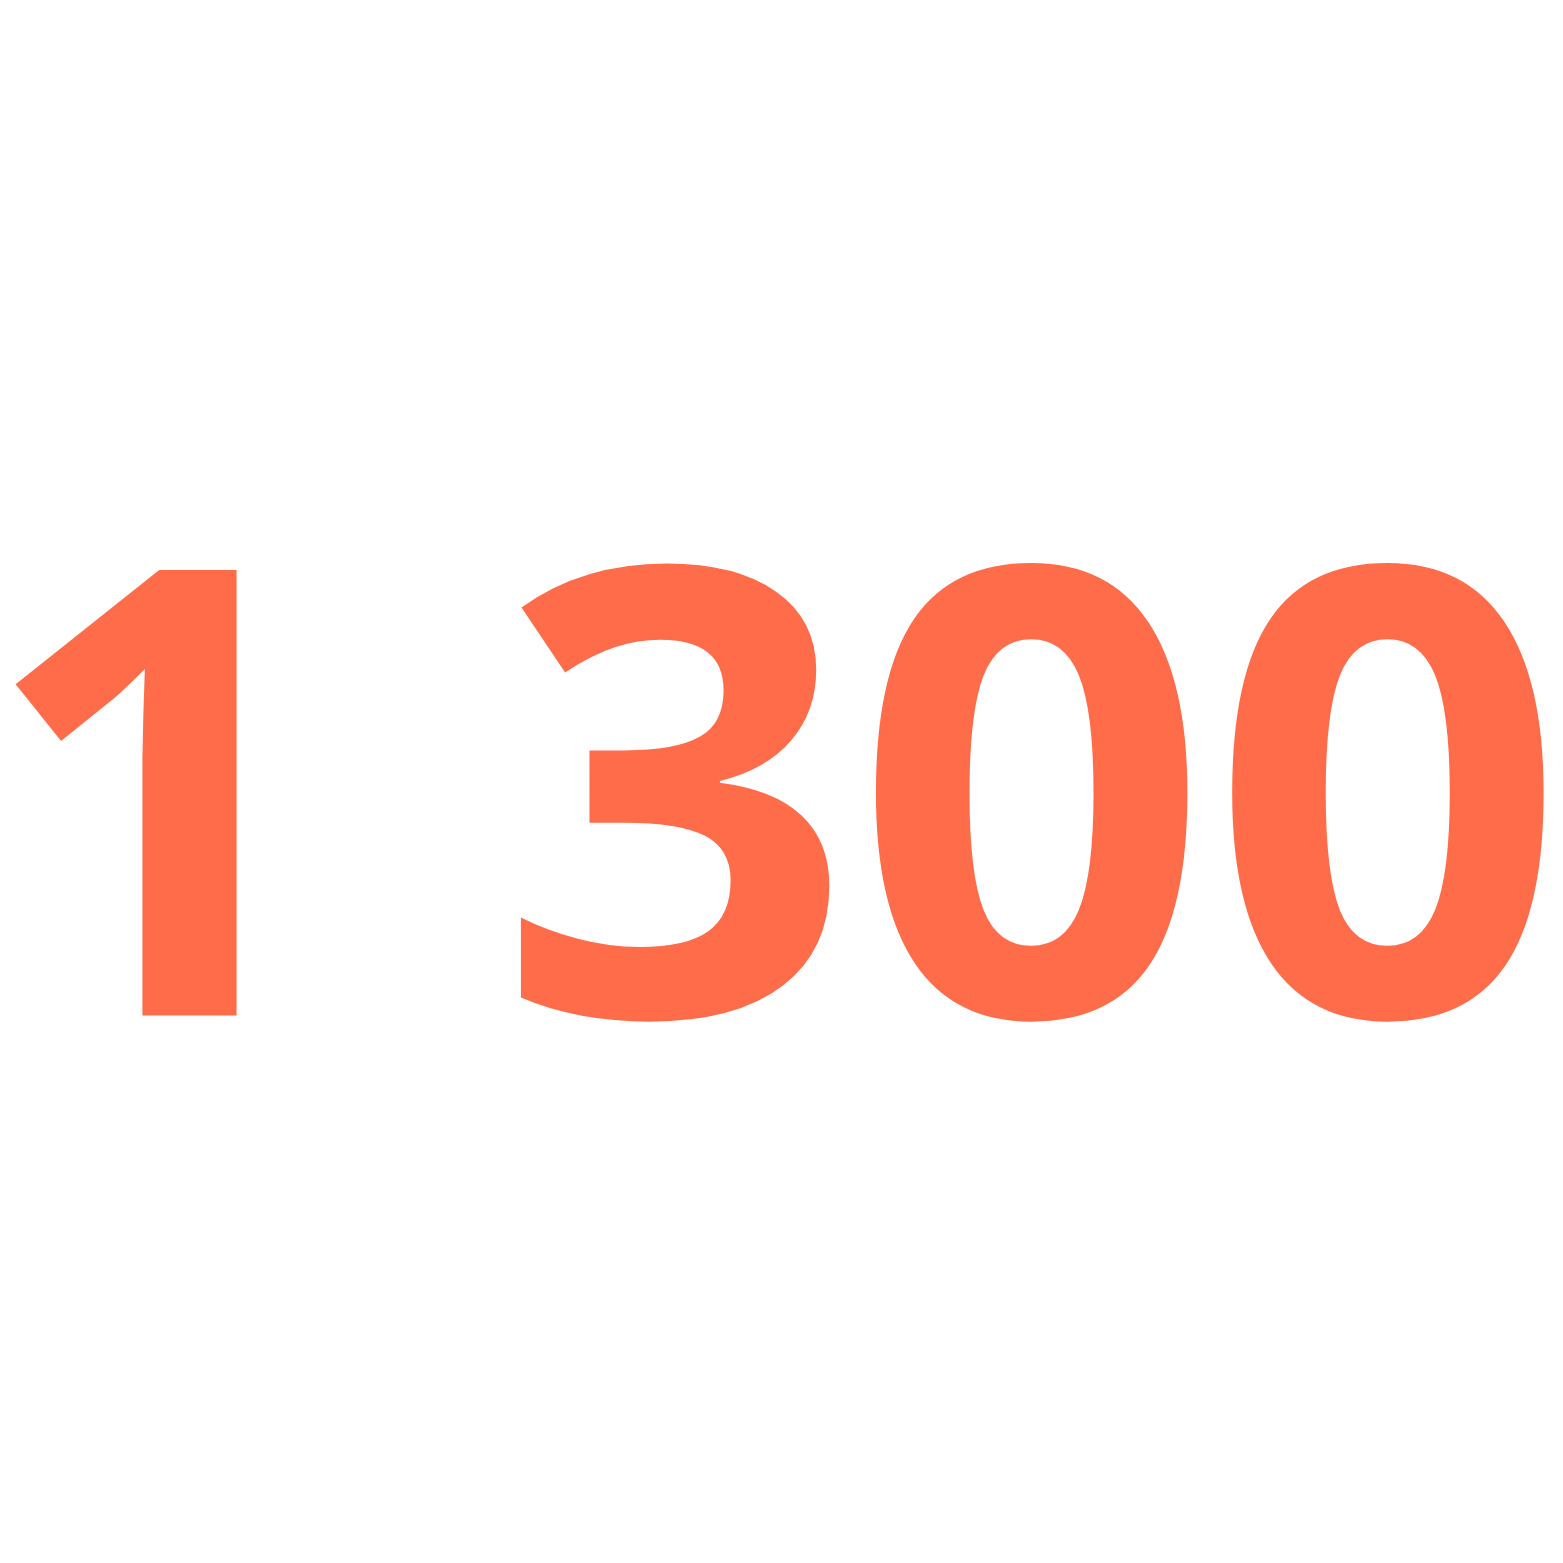 1 300